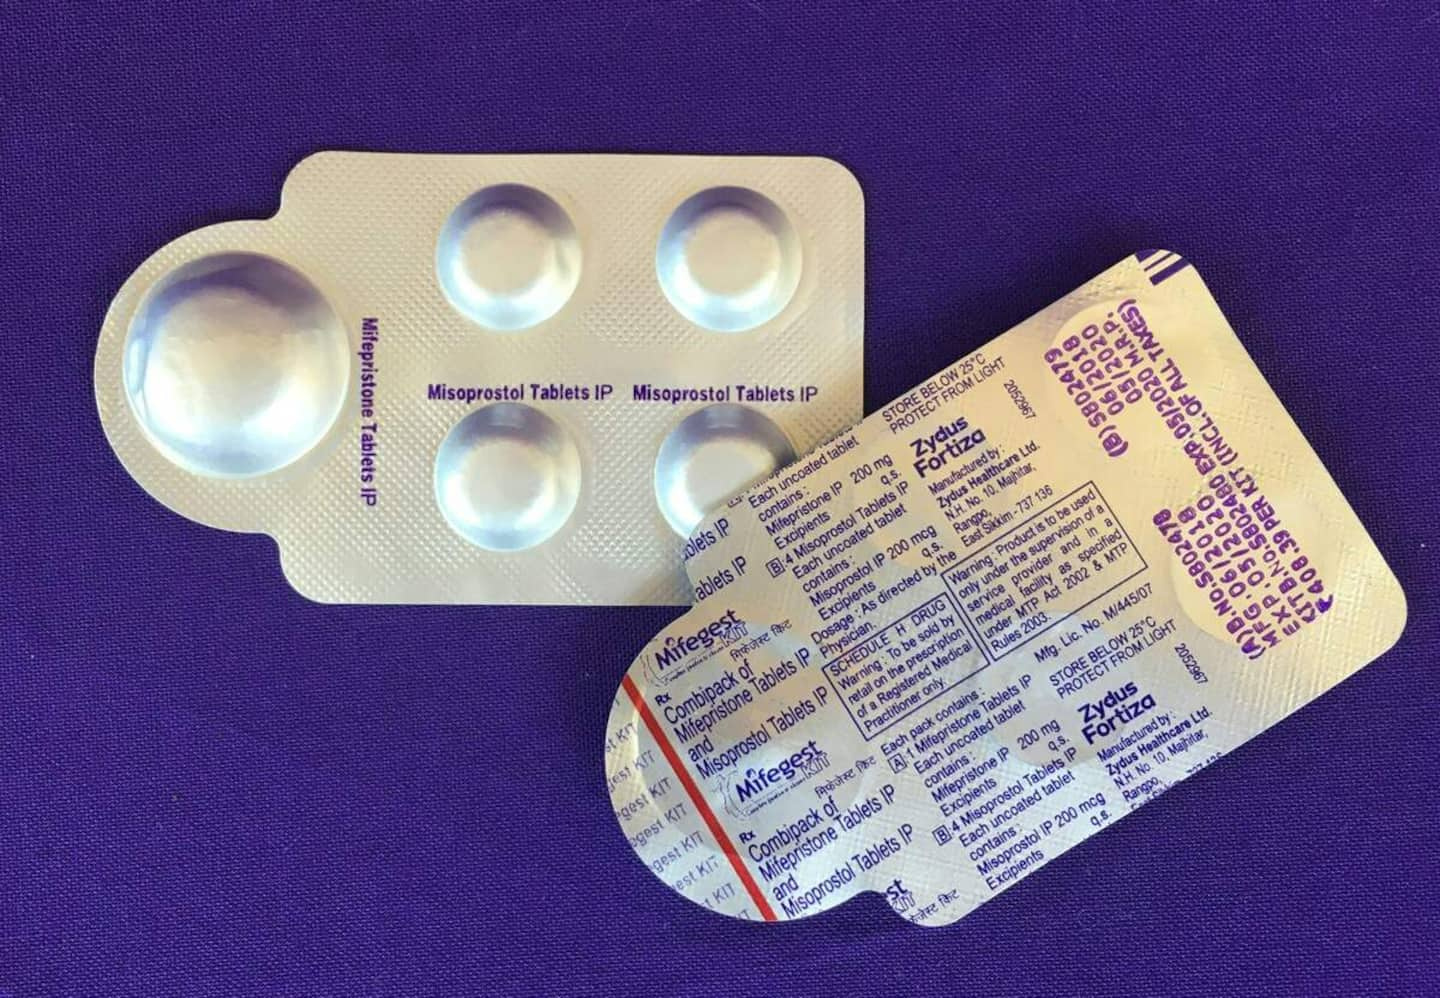 Abortion pills, the next battleground in the United States